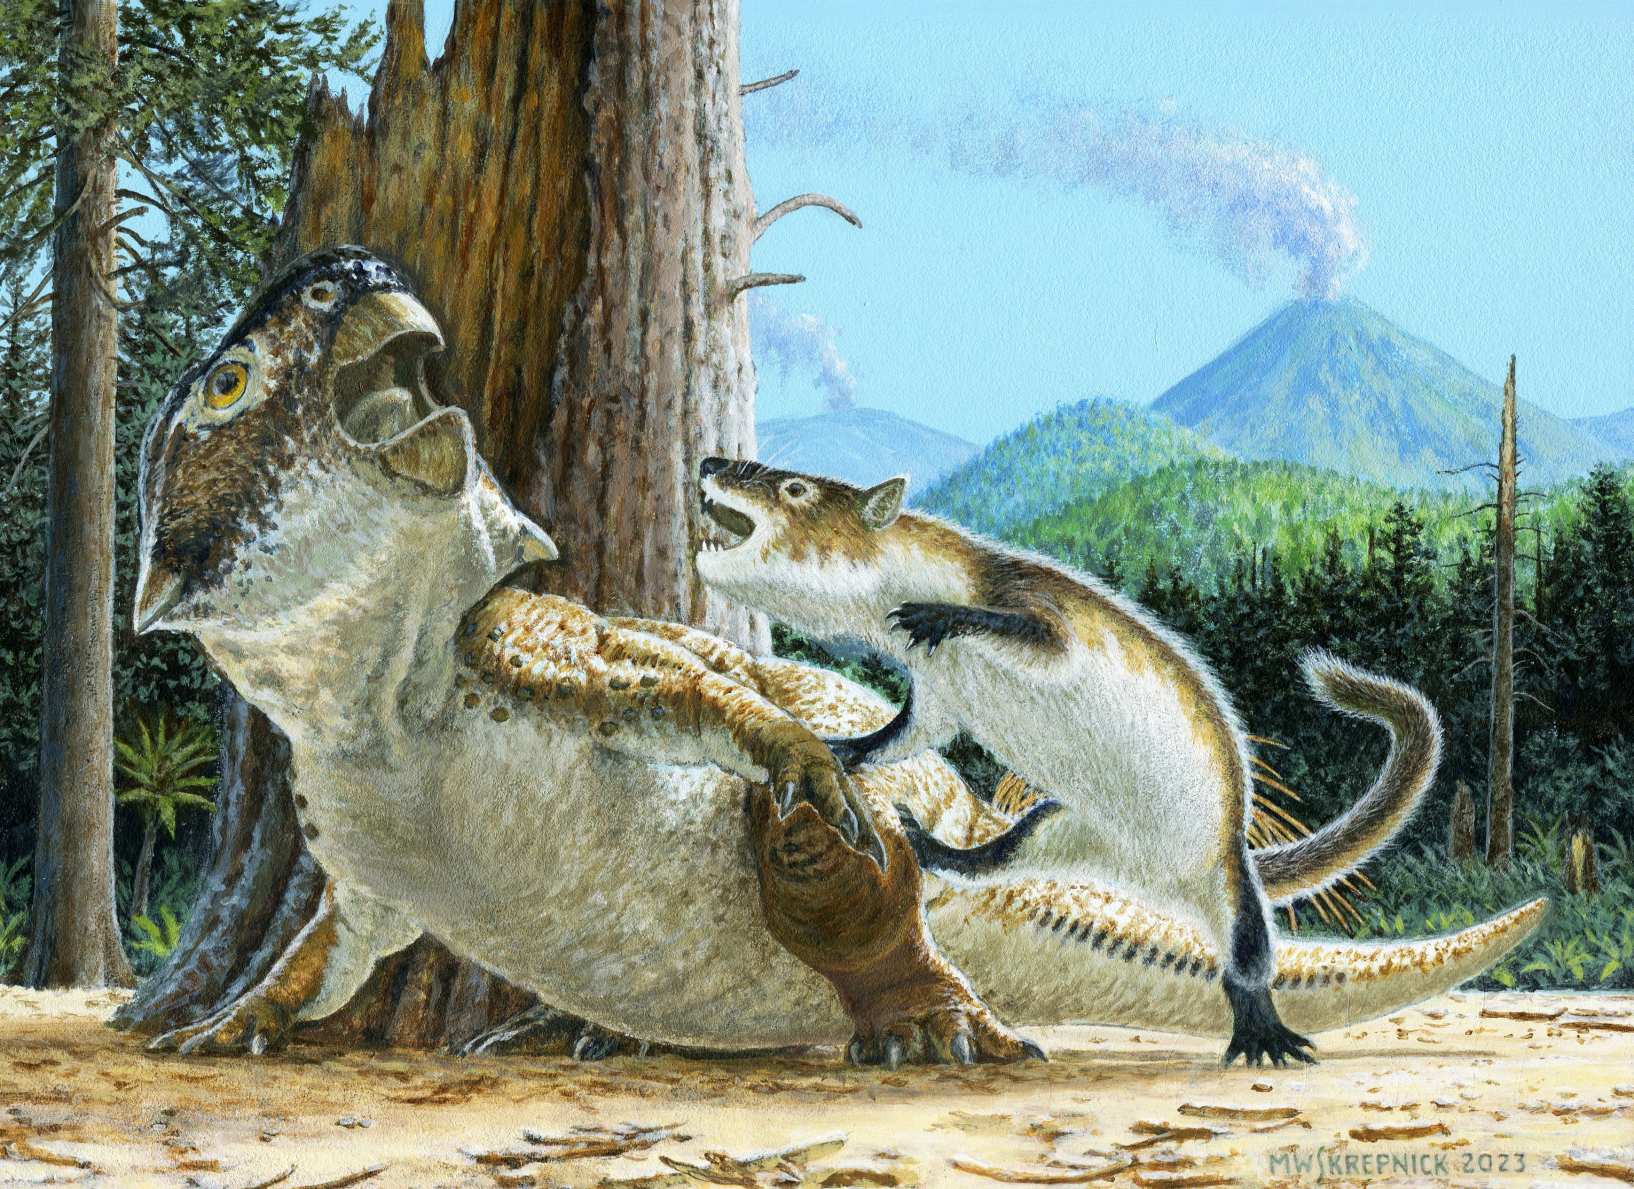 અસામાન્ય અવશેષો ડાયનાસોર 2 પર સસ્તન પ્રાણી પર હુમલો કરવાના દુર્લભ પુરાવા દર્શાવે છે